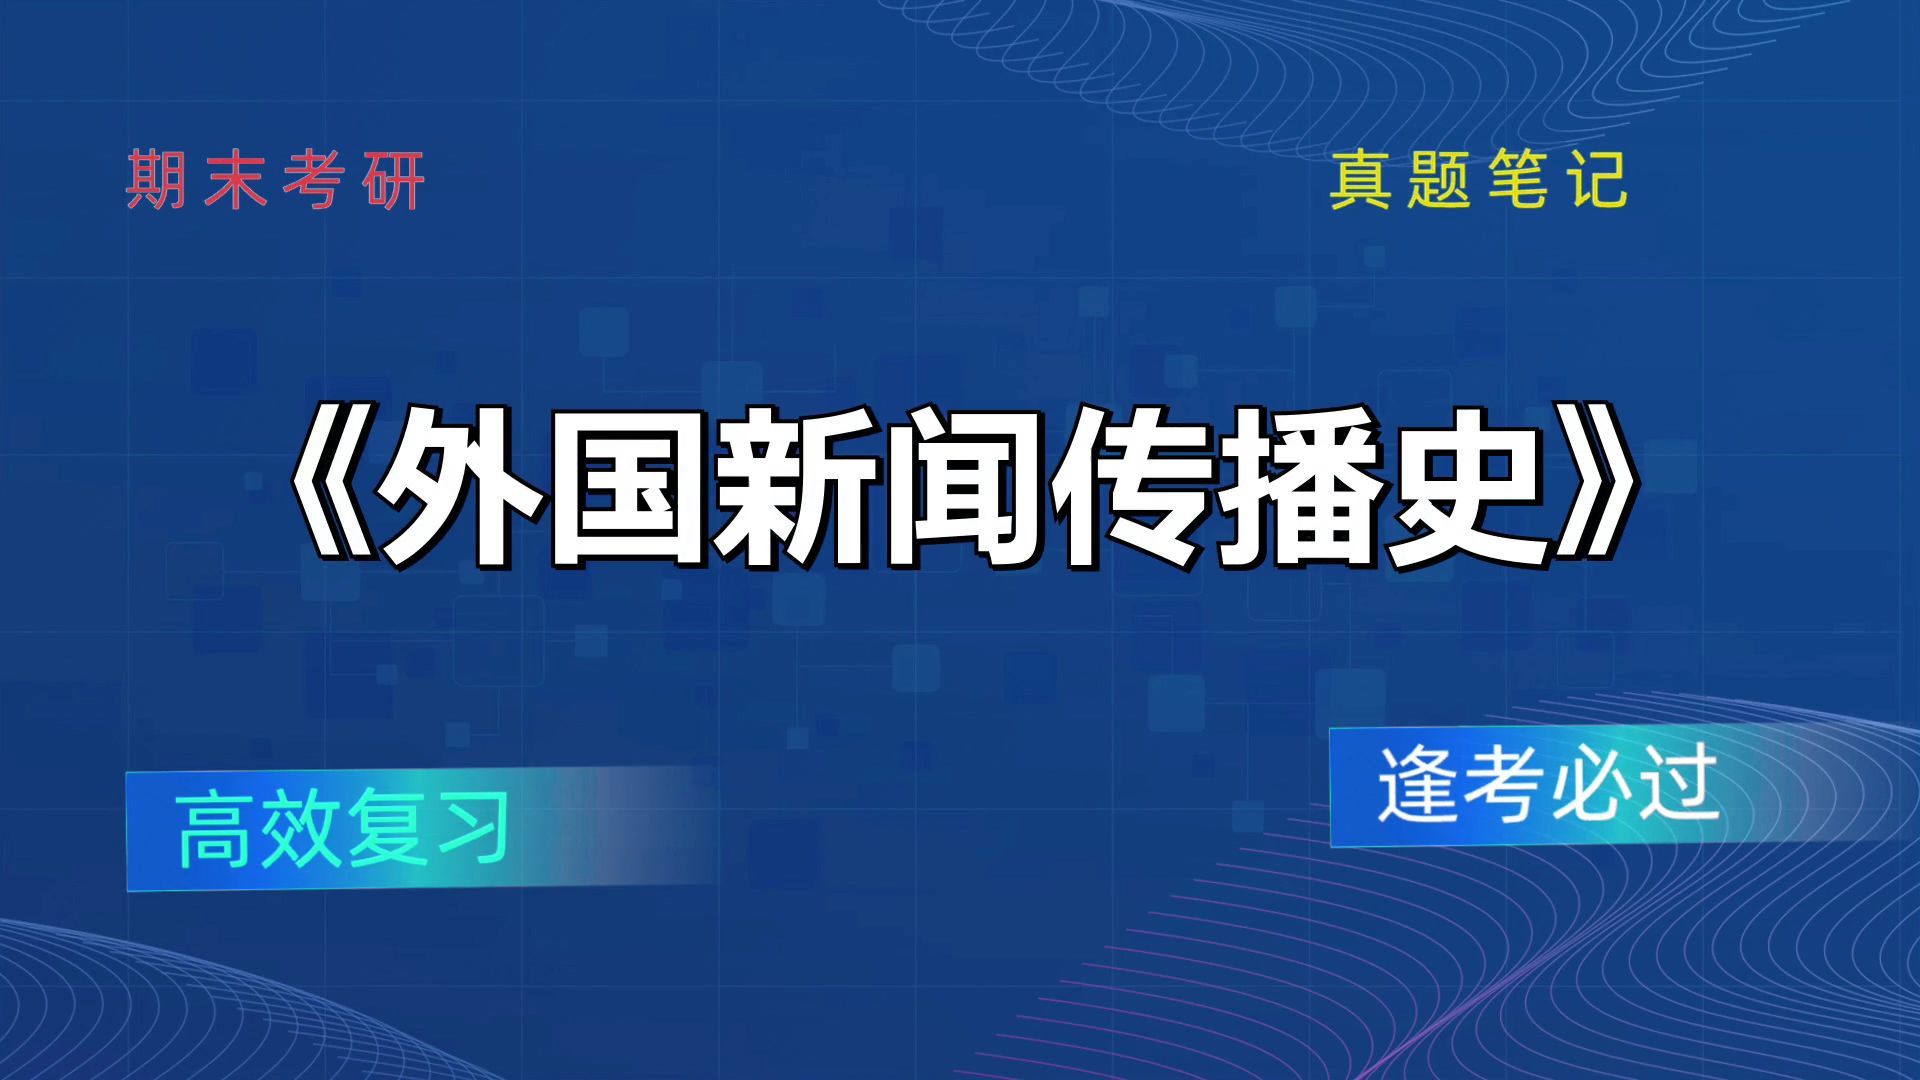 最新外国新闻中文版手机6分钟前地震最新消息今天